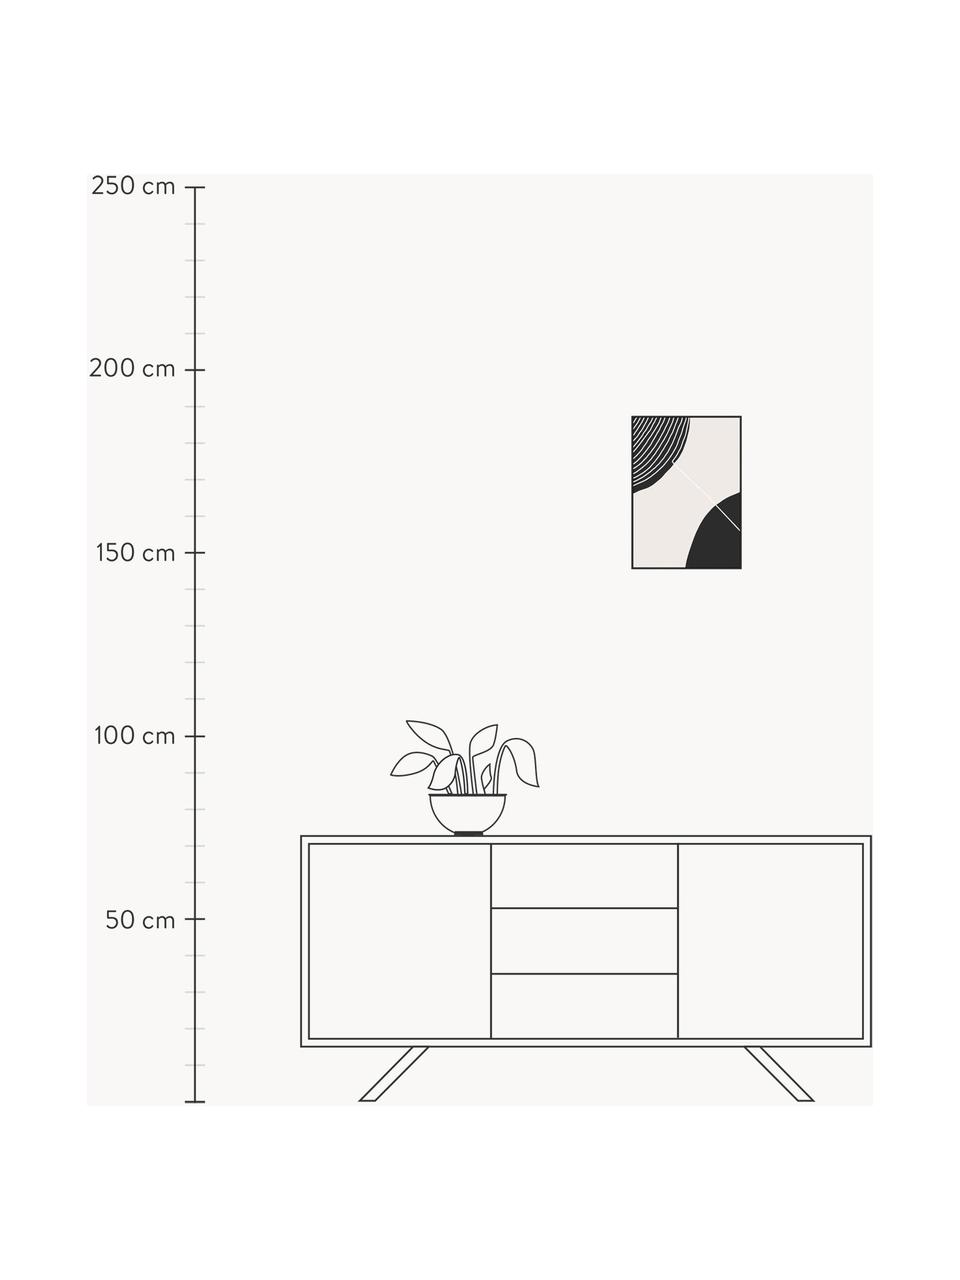 Impression numérique encadrée Feminine Doodles, Noir, beige, blanc, larg. 32 x long. 42 cm